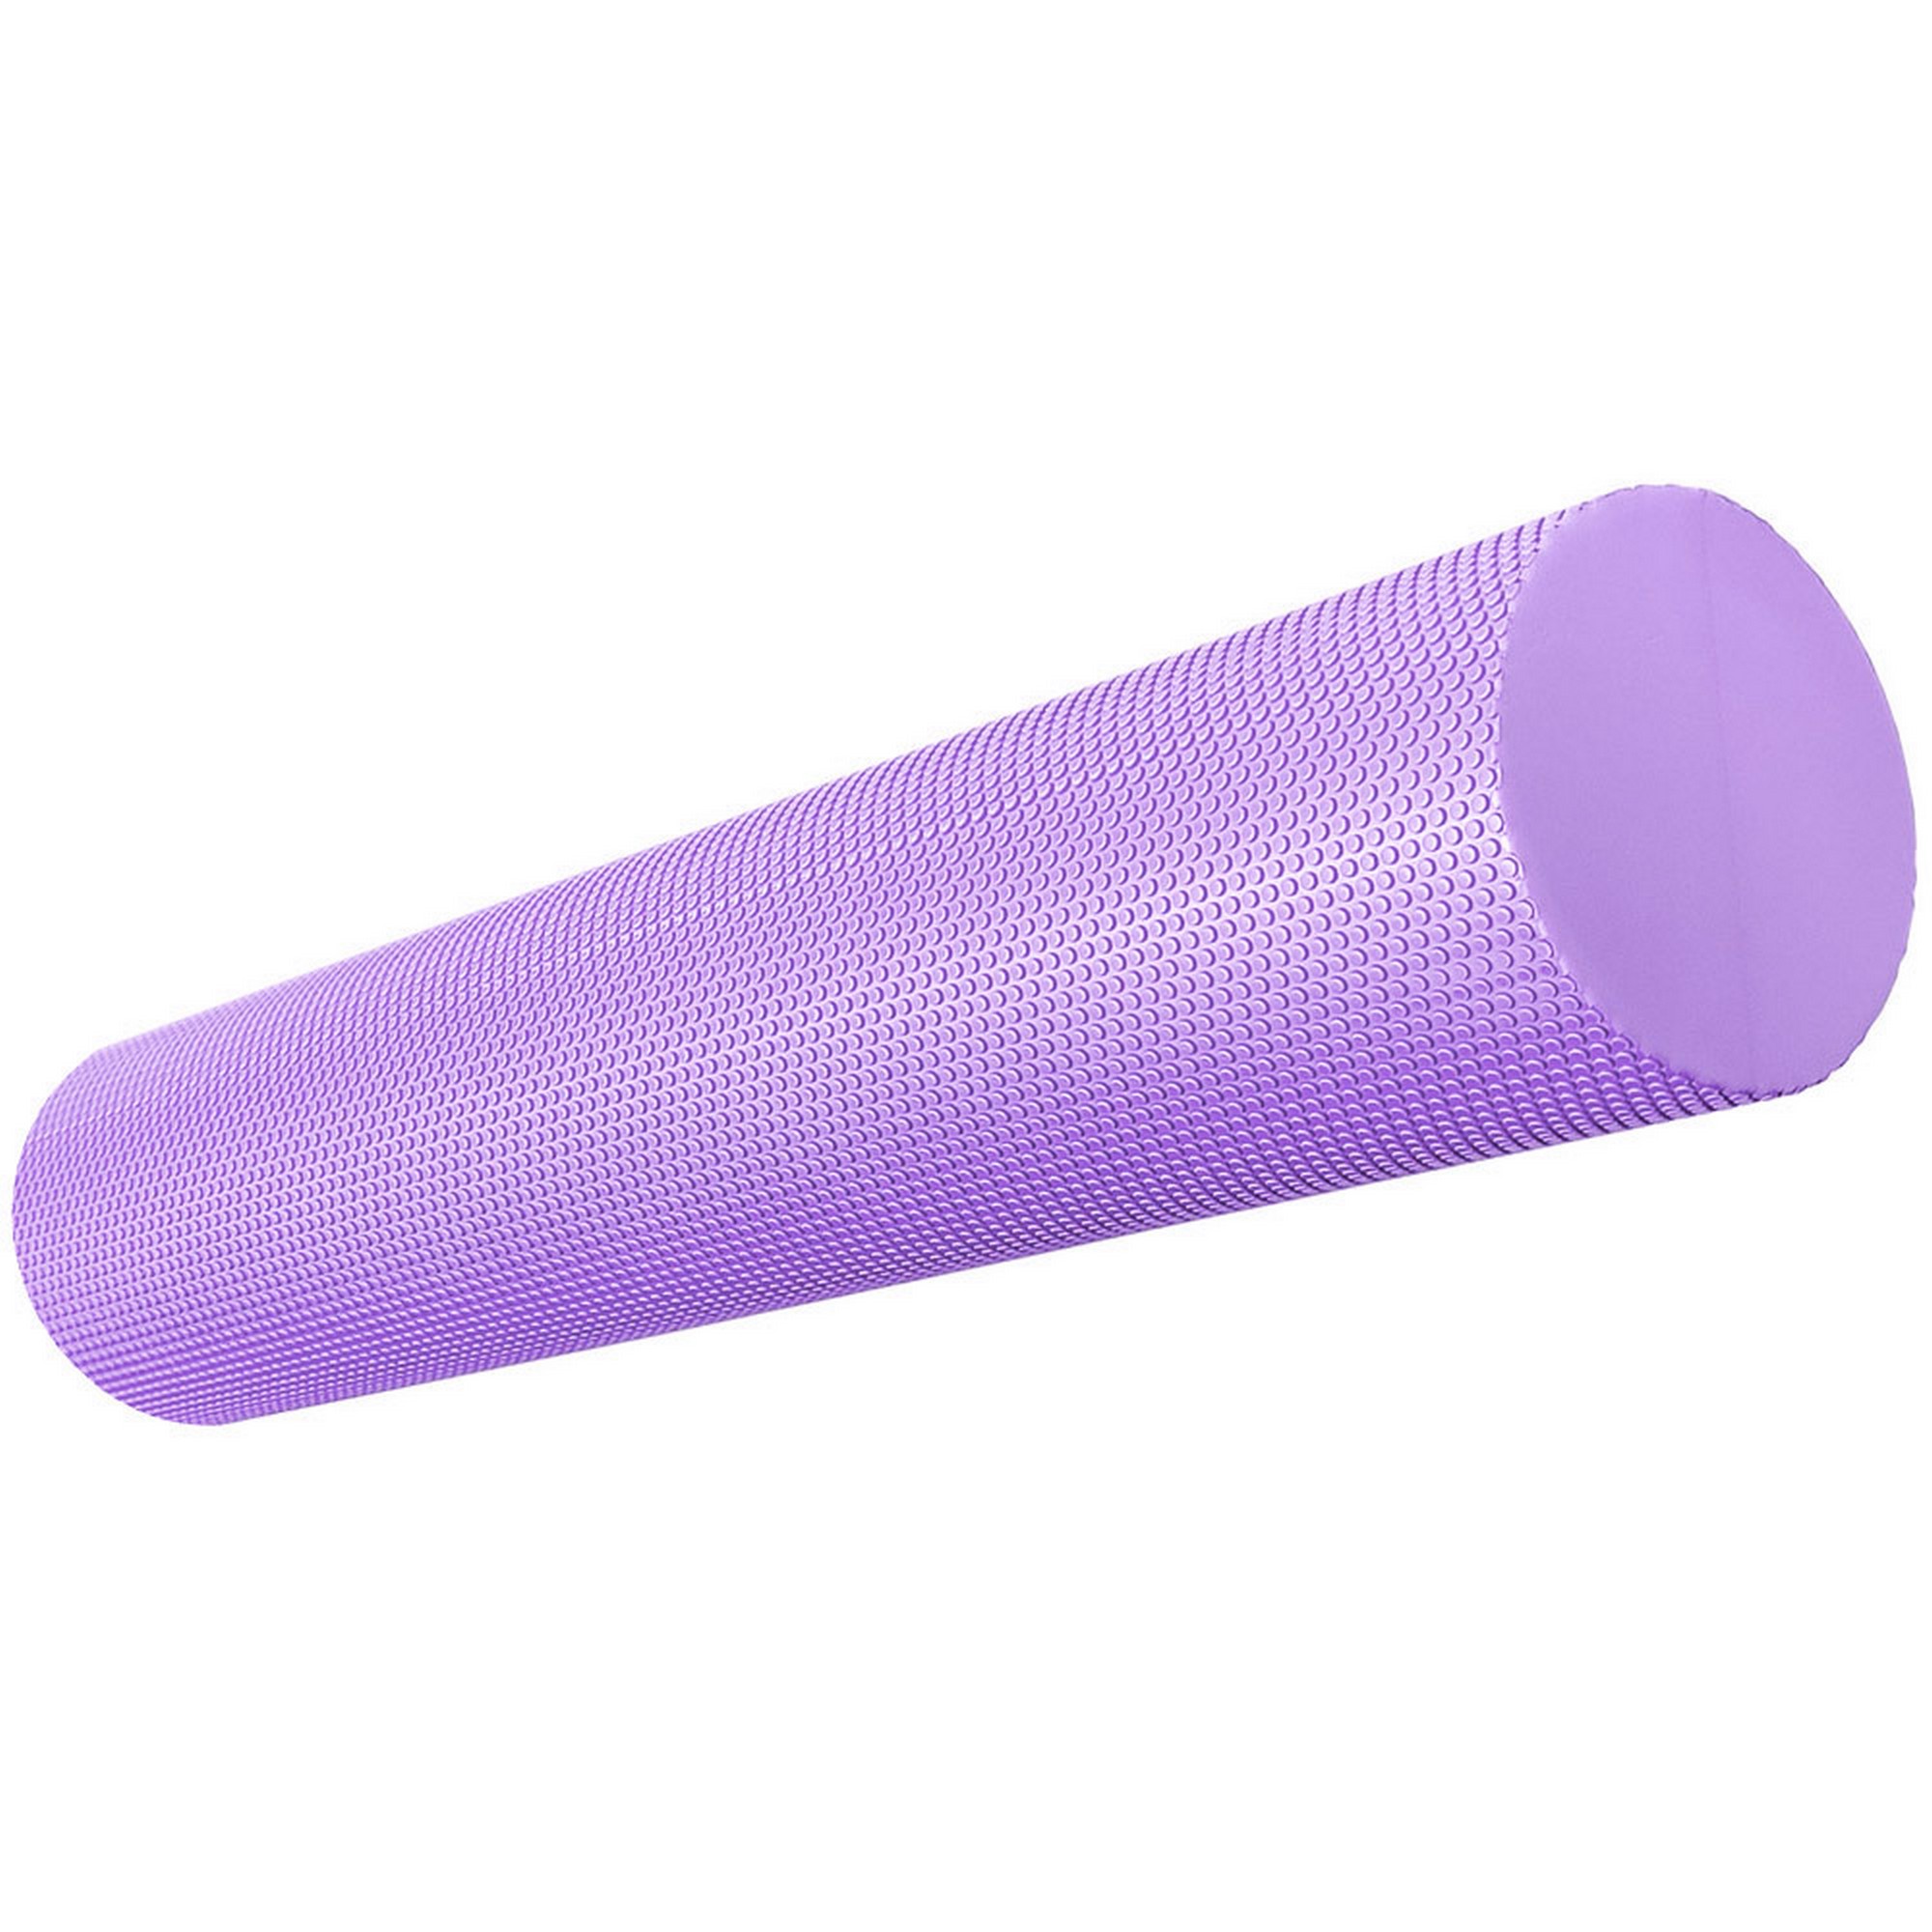 Ролик для йоги полумягкий Профи 60x15см Sportex ЭВА E39105-3 фиолетовый 2000_2000